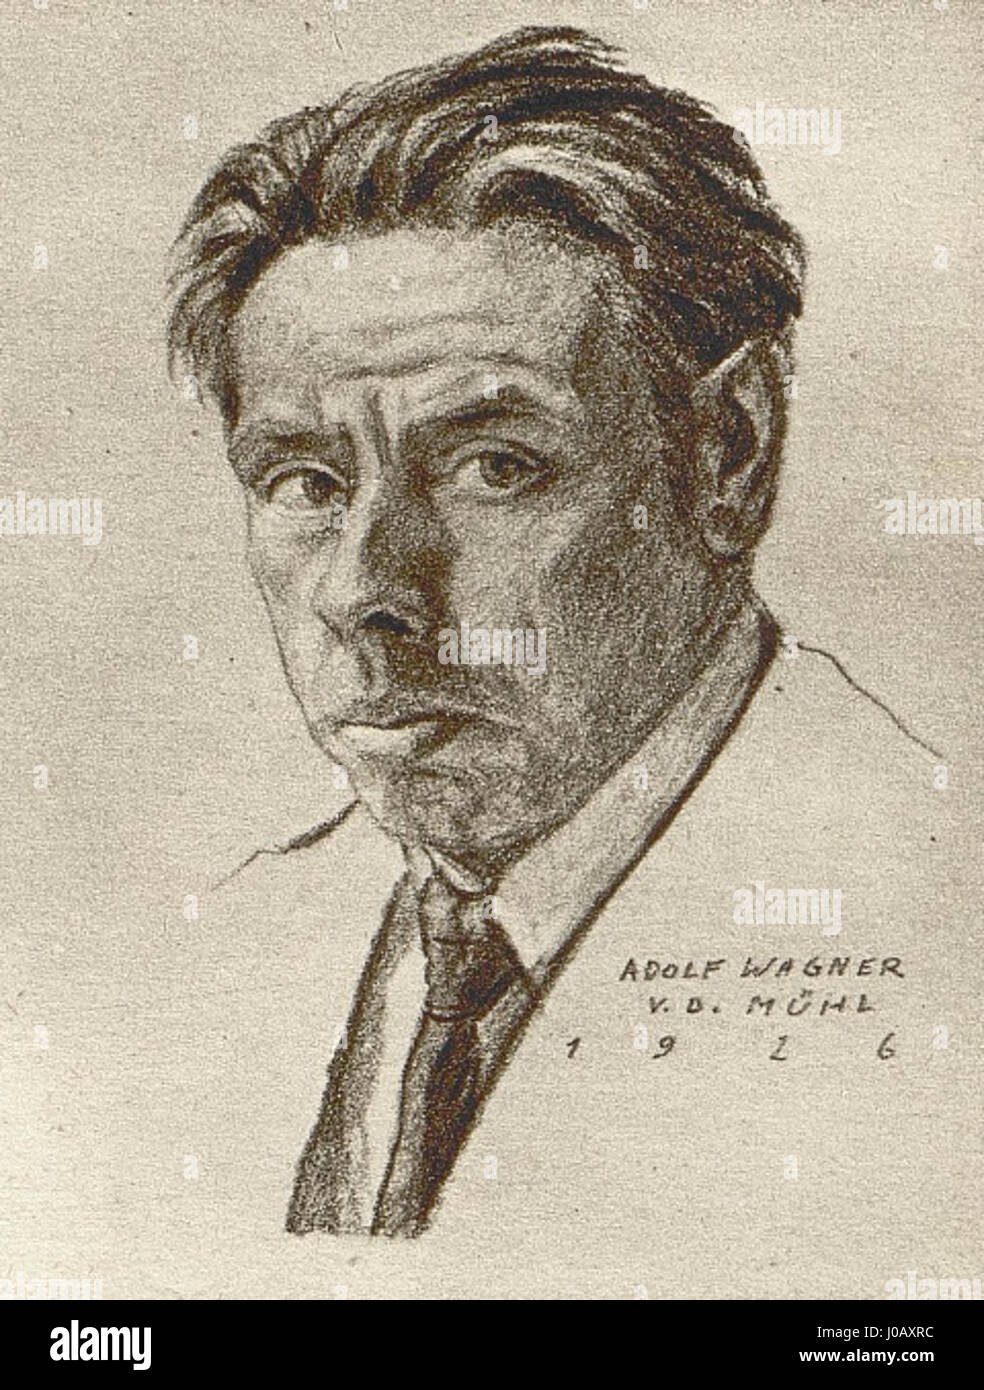 Adolf Wagner von der Mühl - Selbstporträt Stockfoto